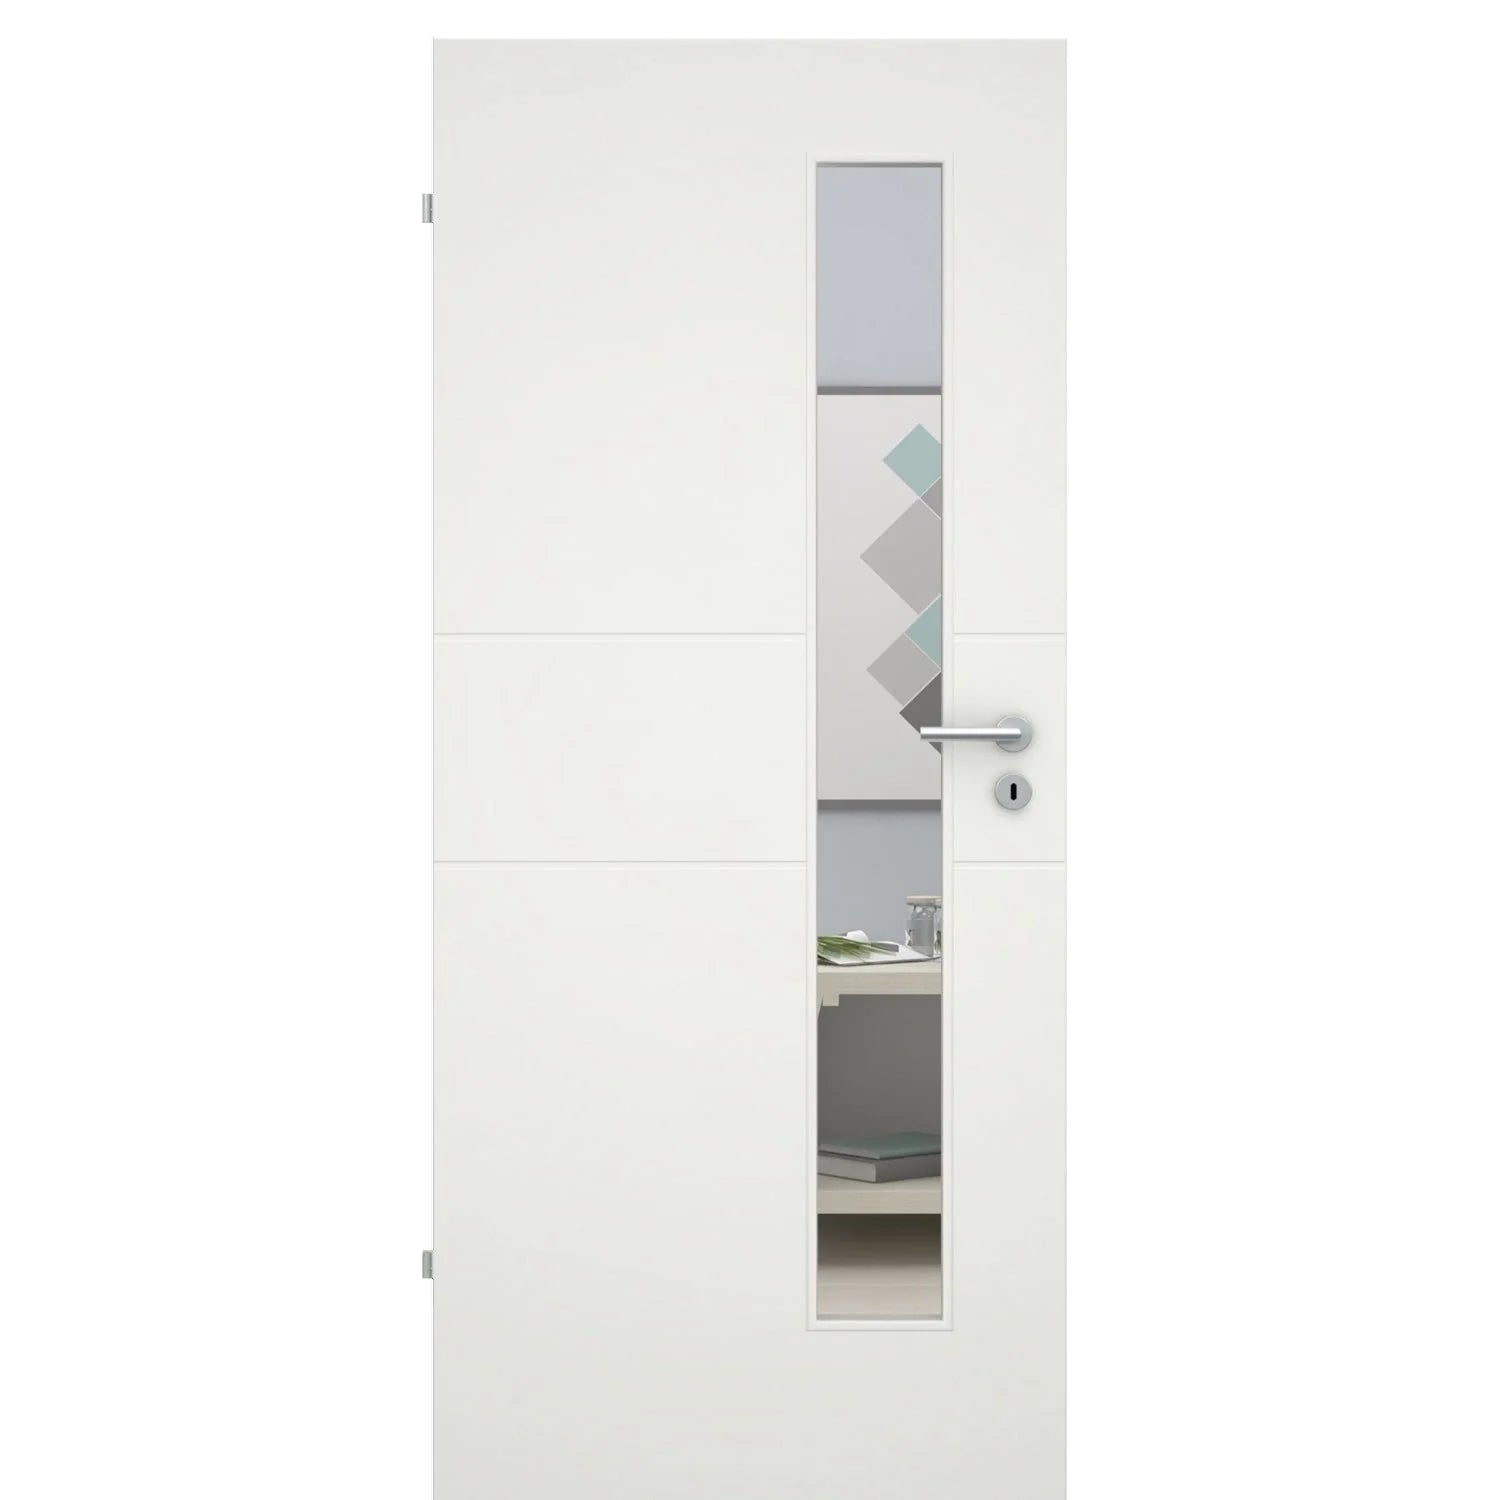 Zimmertür mit Lichtausschnittsoft-weiß 2 Rillen Eckkante - Modell Designtür Q21LAS